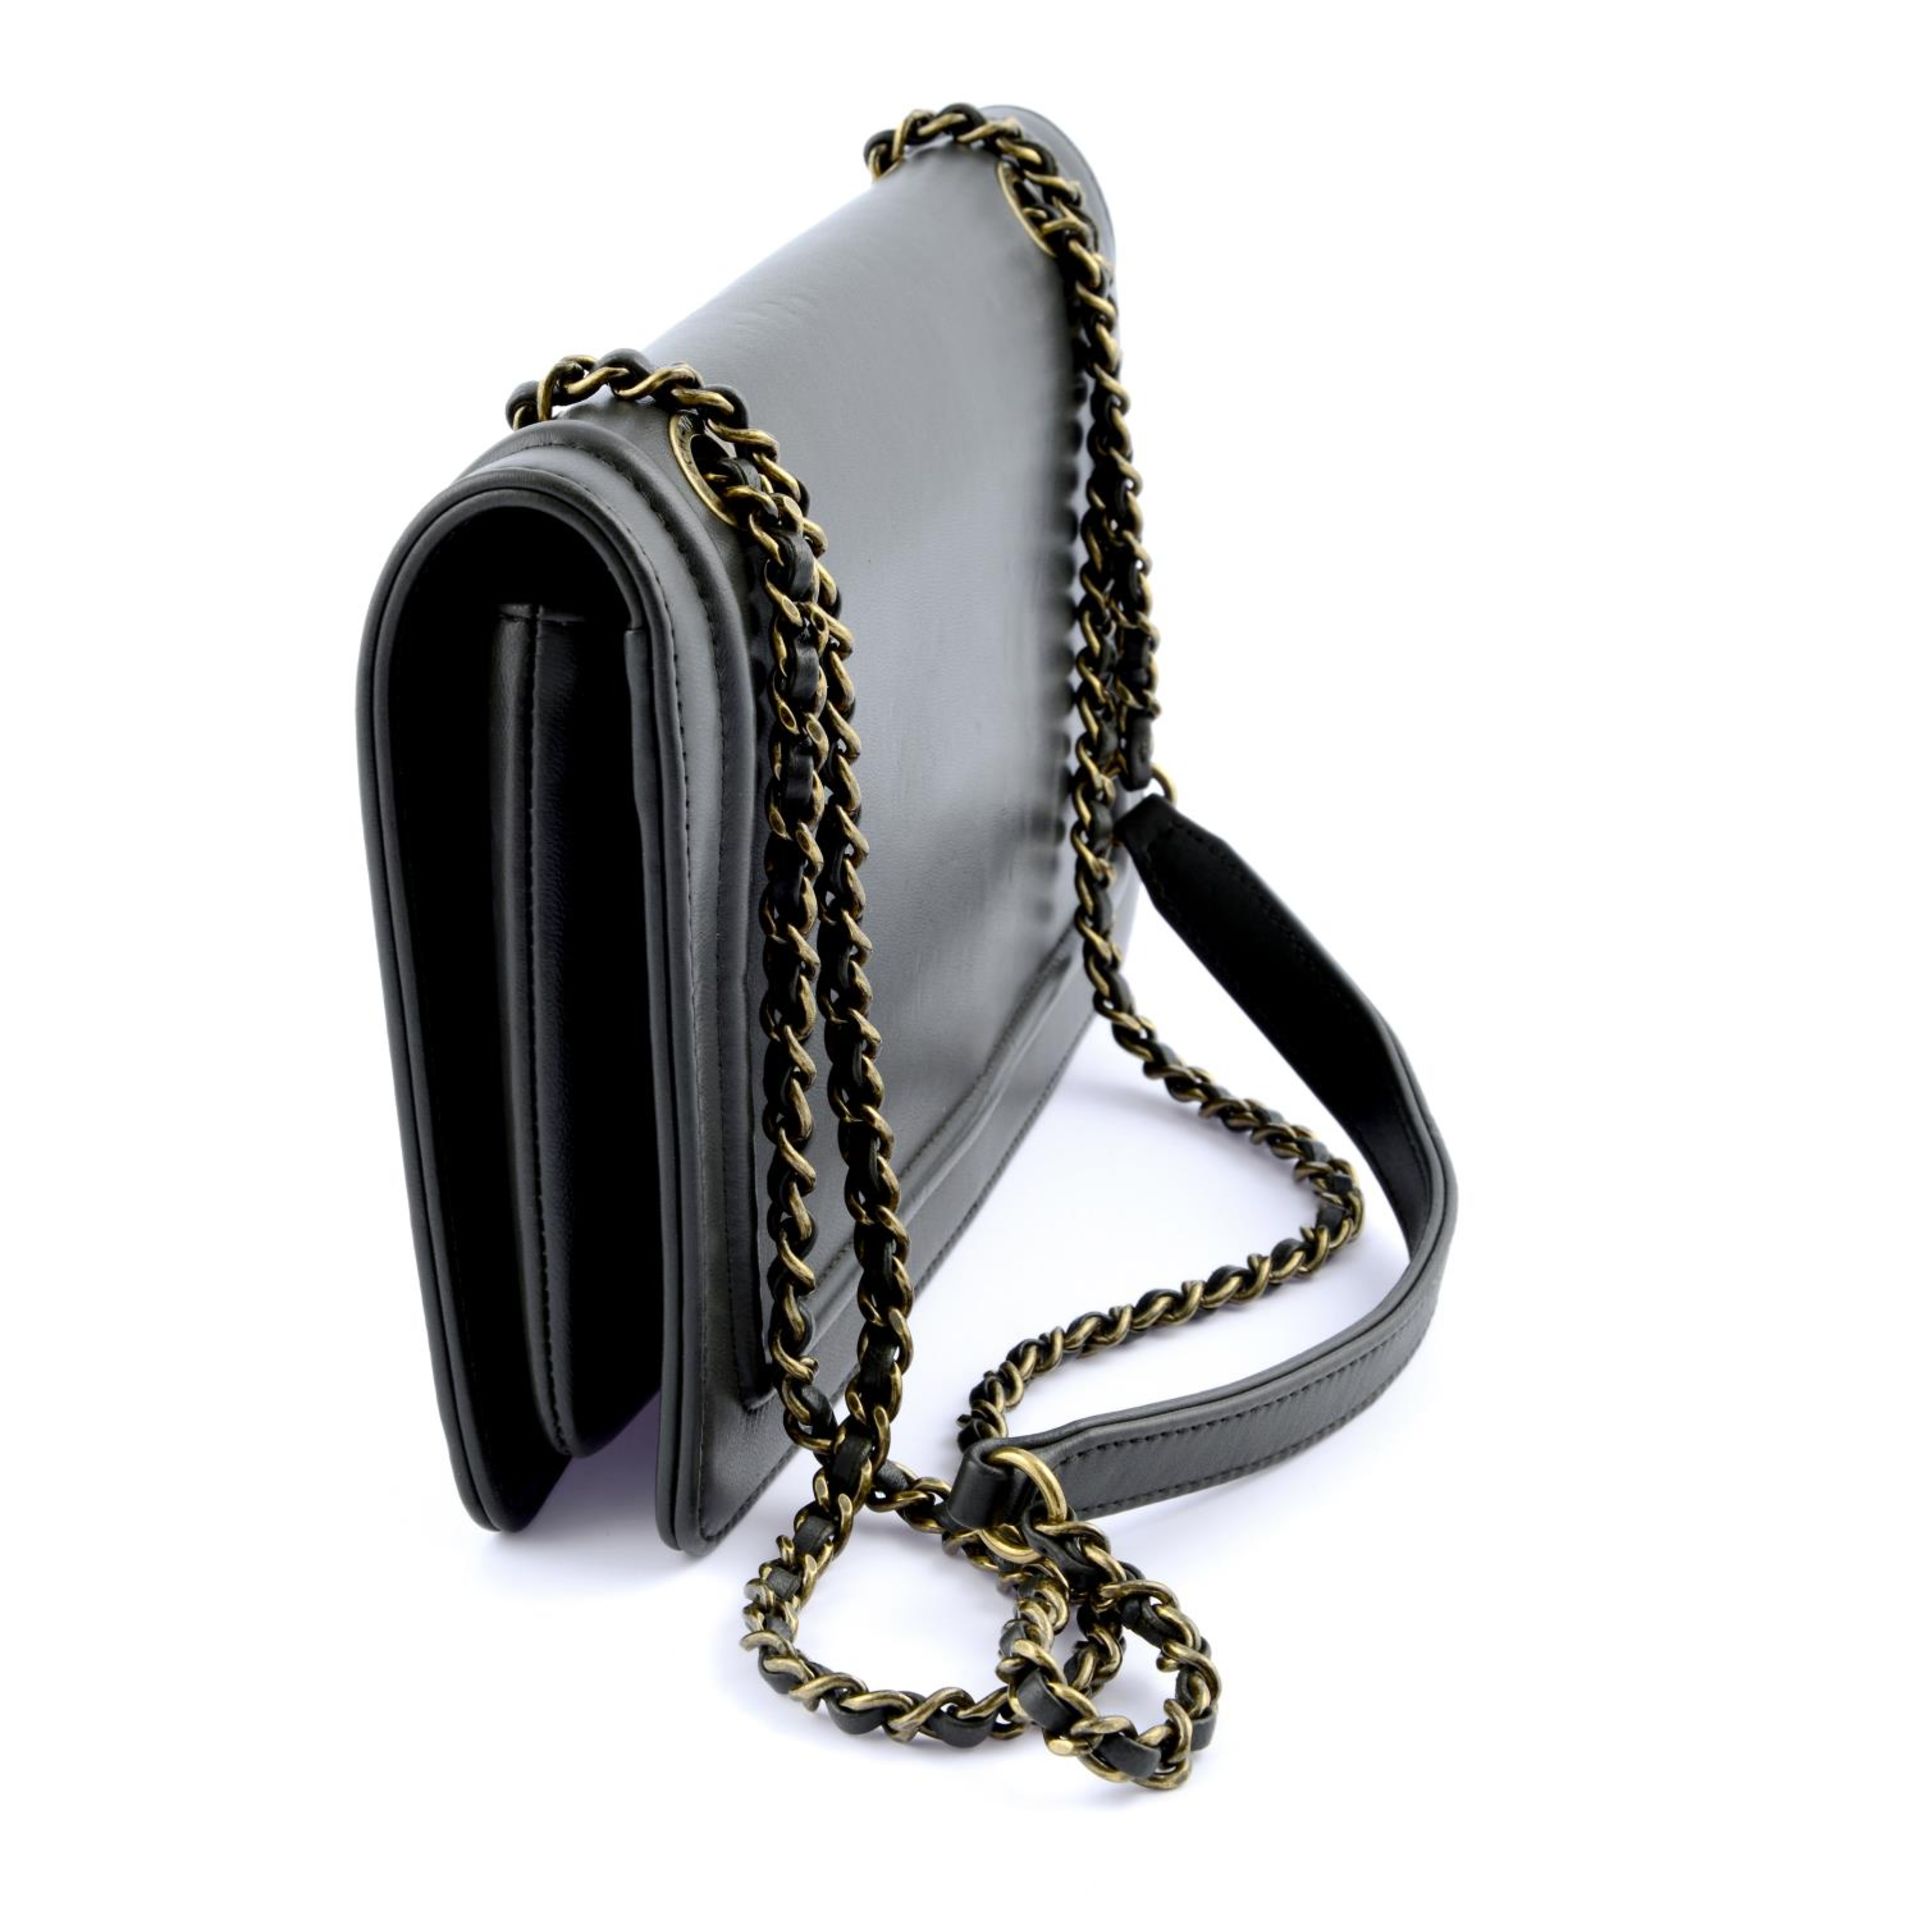 CHANEL - a mixed metal CC Flap handbag. - Bild 3 aus 6